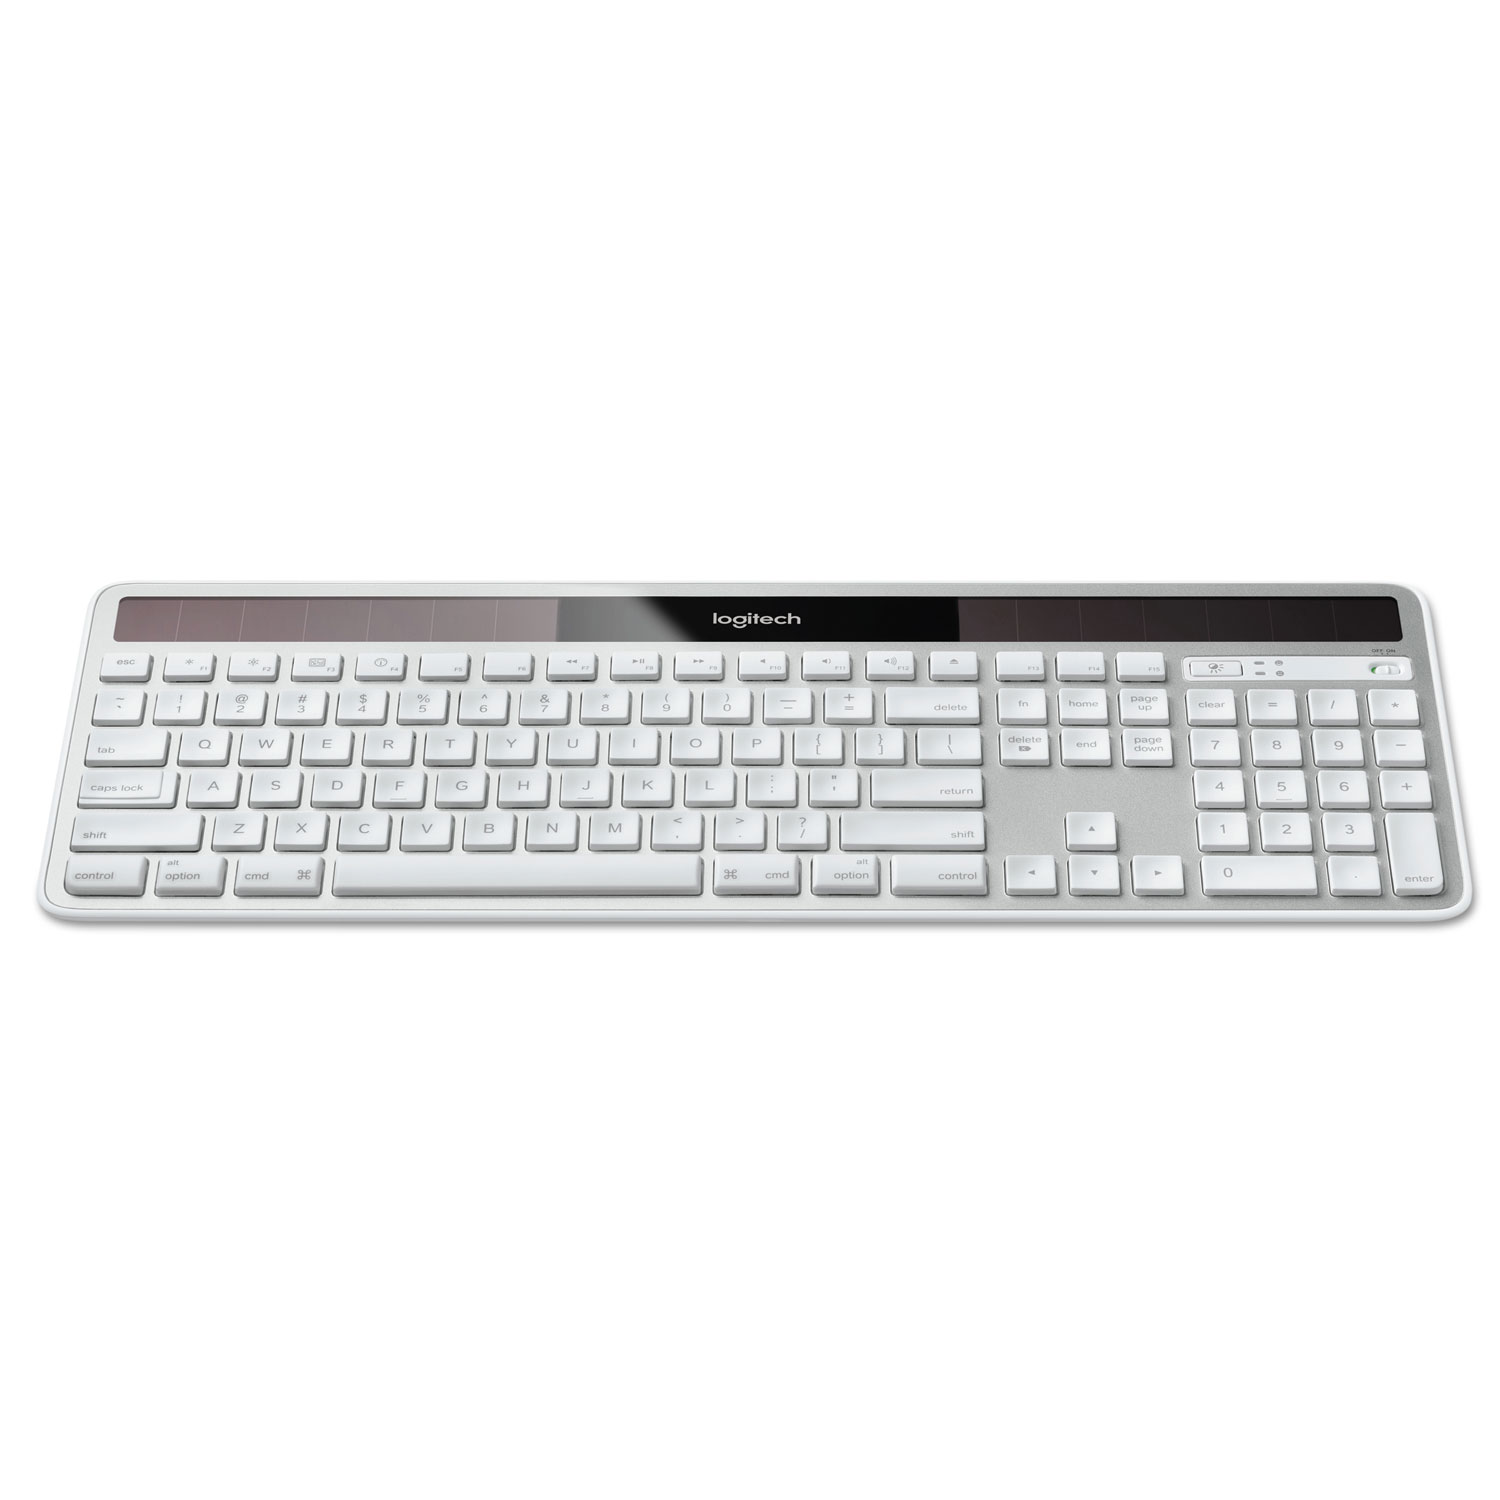  Logitech 920-003472 Wireless Solar Keyboard for Mac, Full Size, Silver (LOG920003472) 